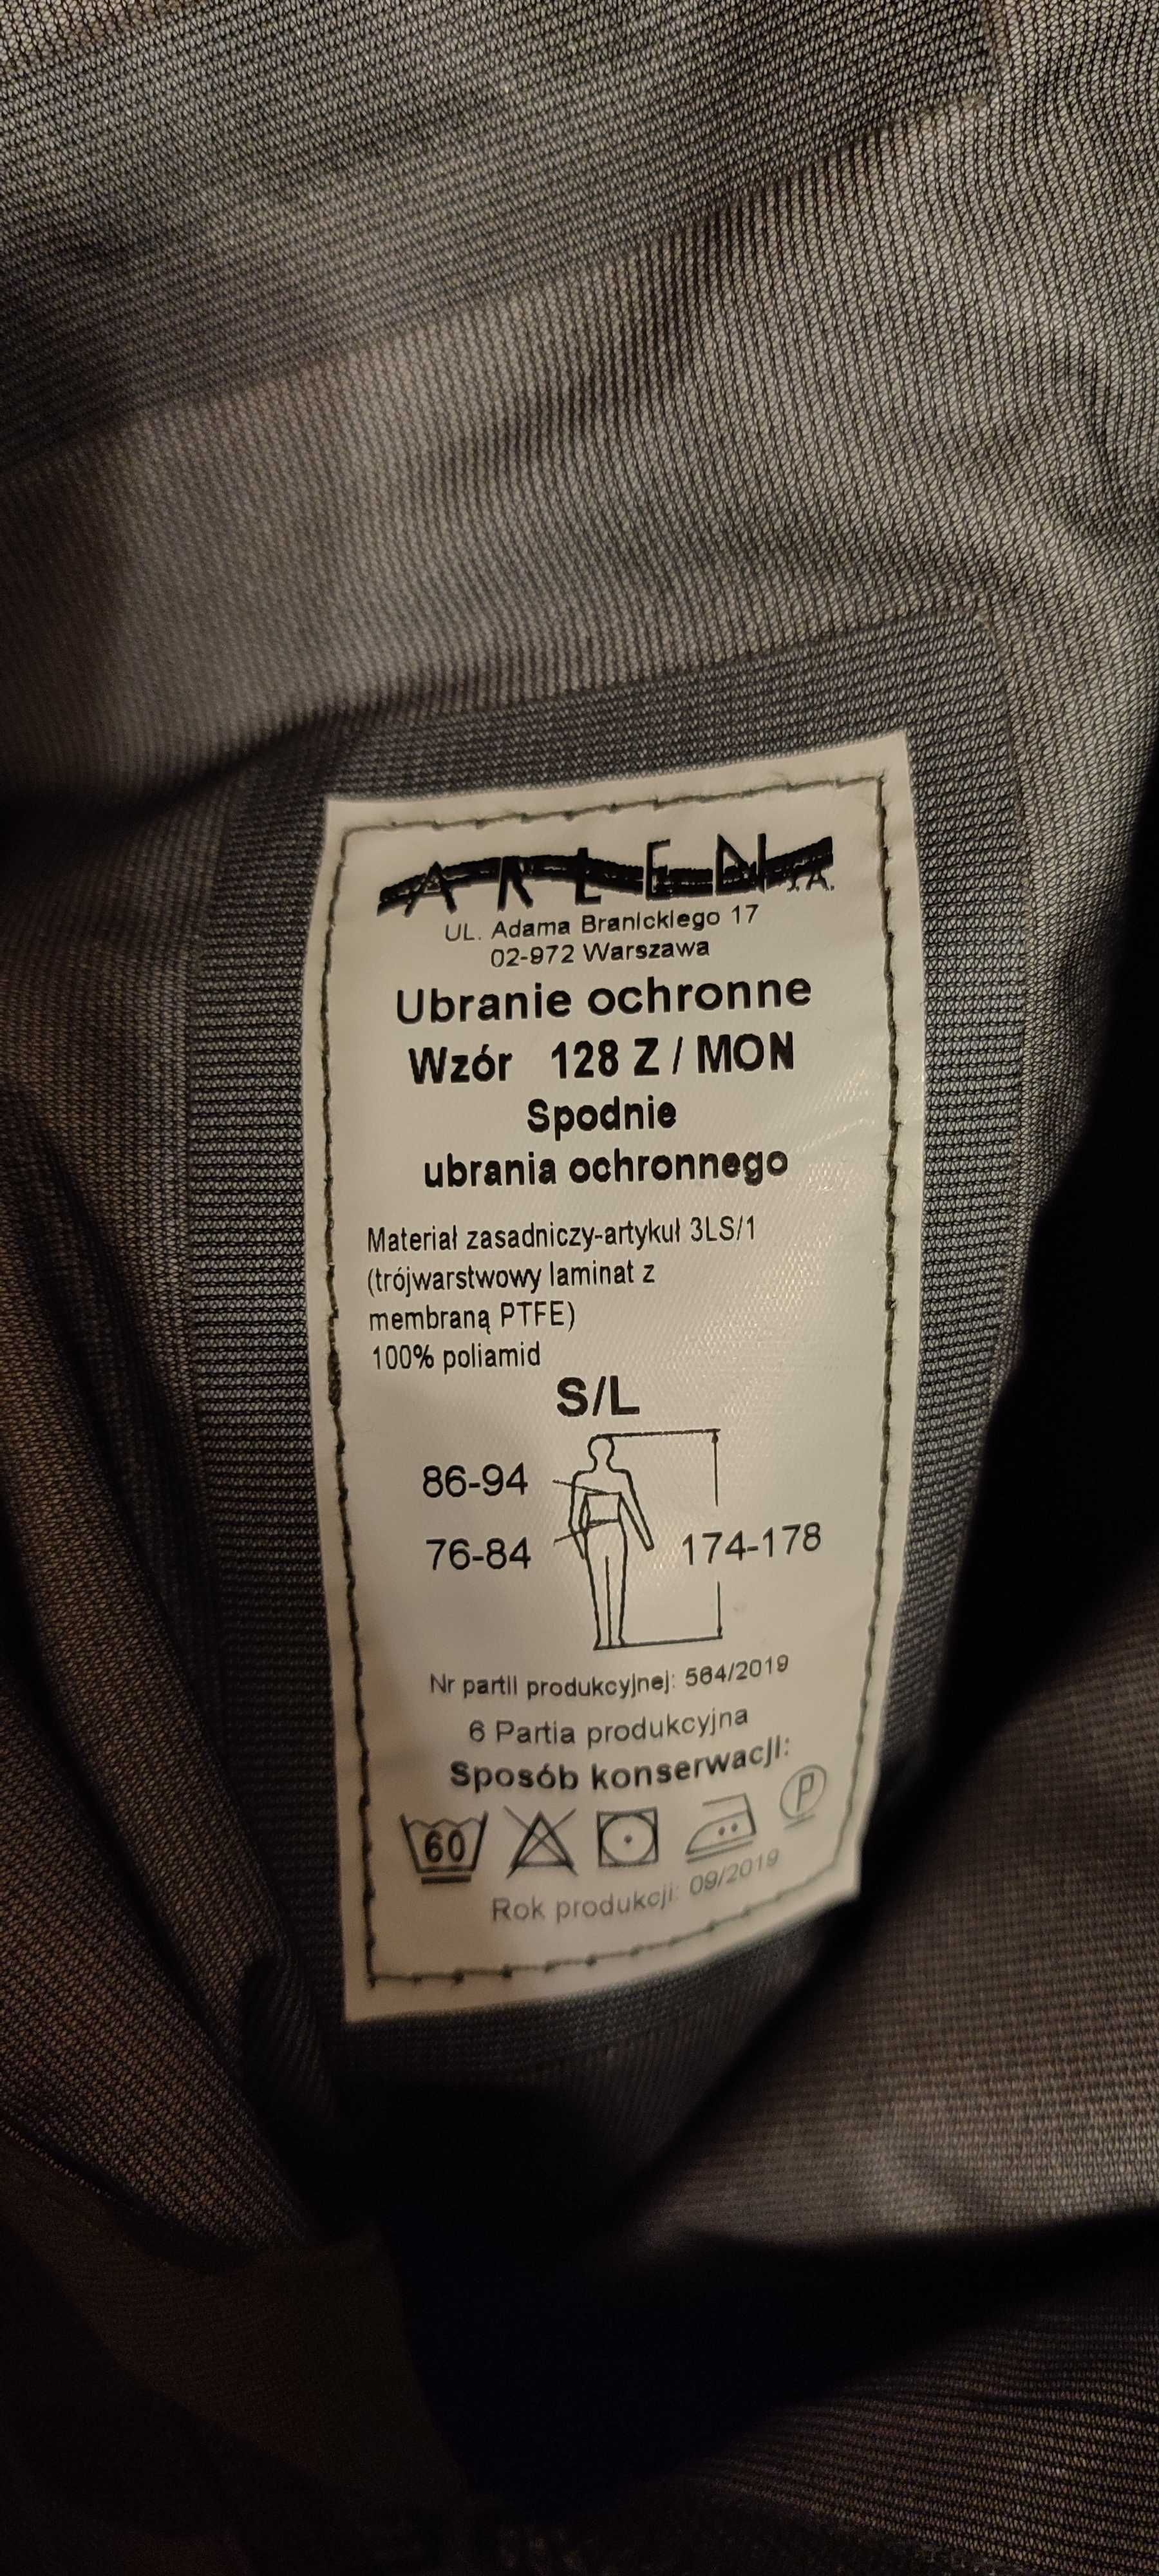 Spodnie od ubrania ochronnego gore-tex wz. 128 Z/MON S/L